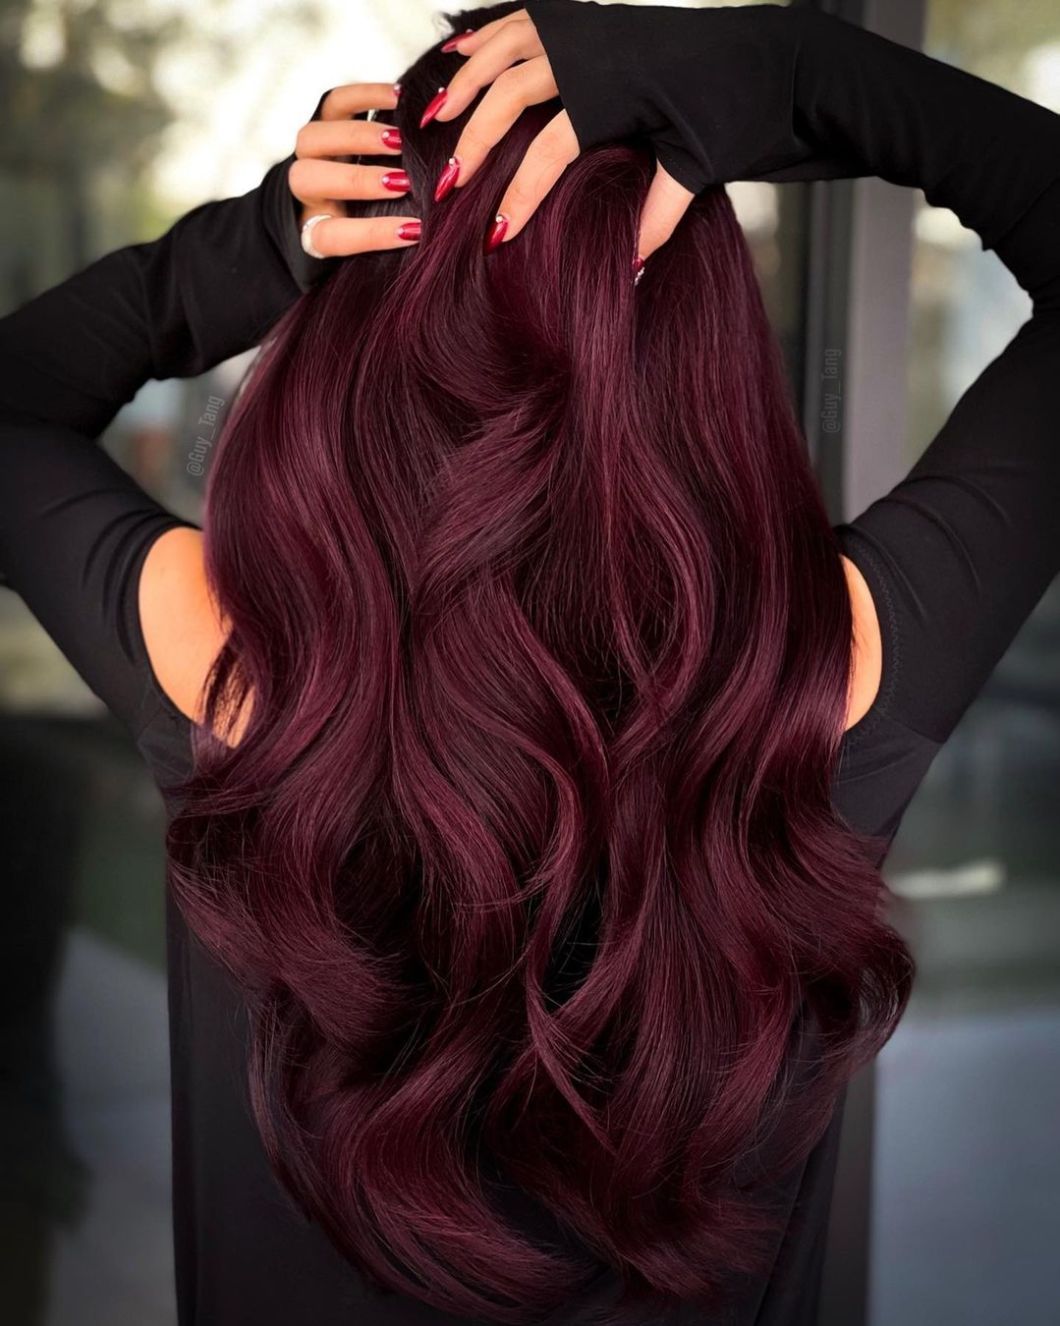 Burgundy Hair Color. Top 75+ Hair Color Ideas for Women - 40